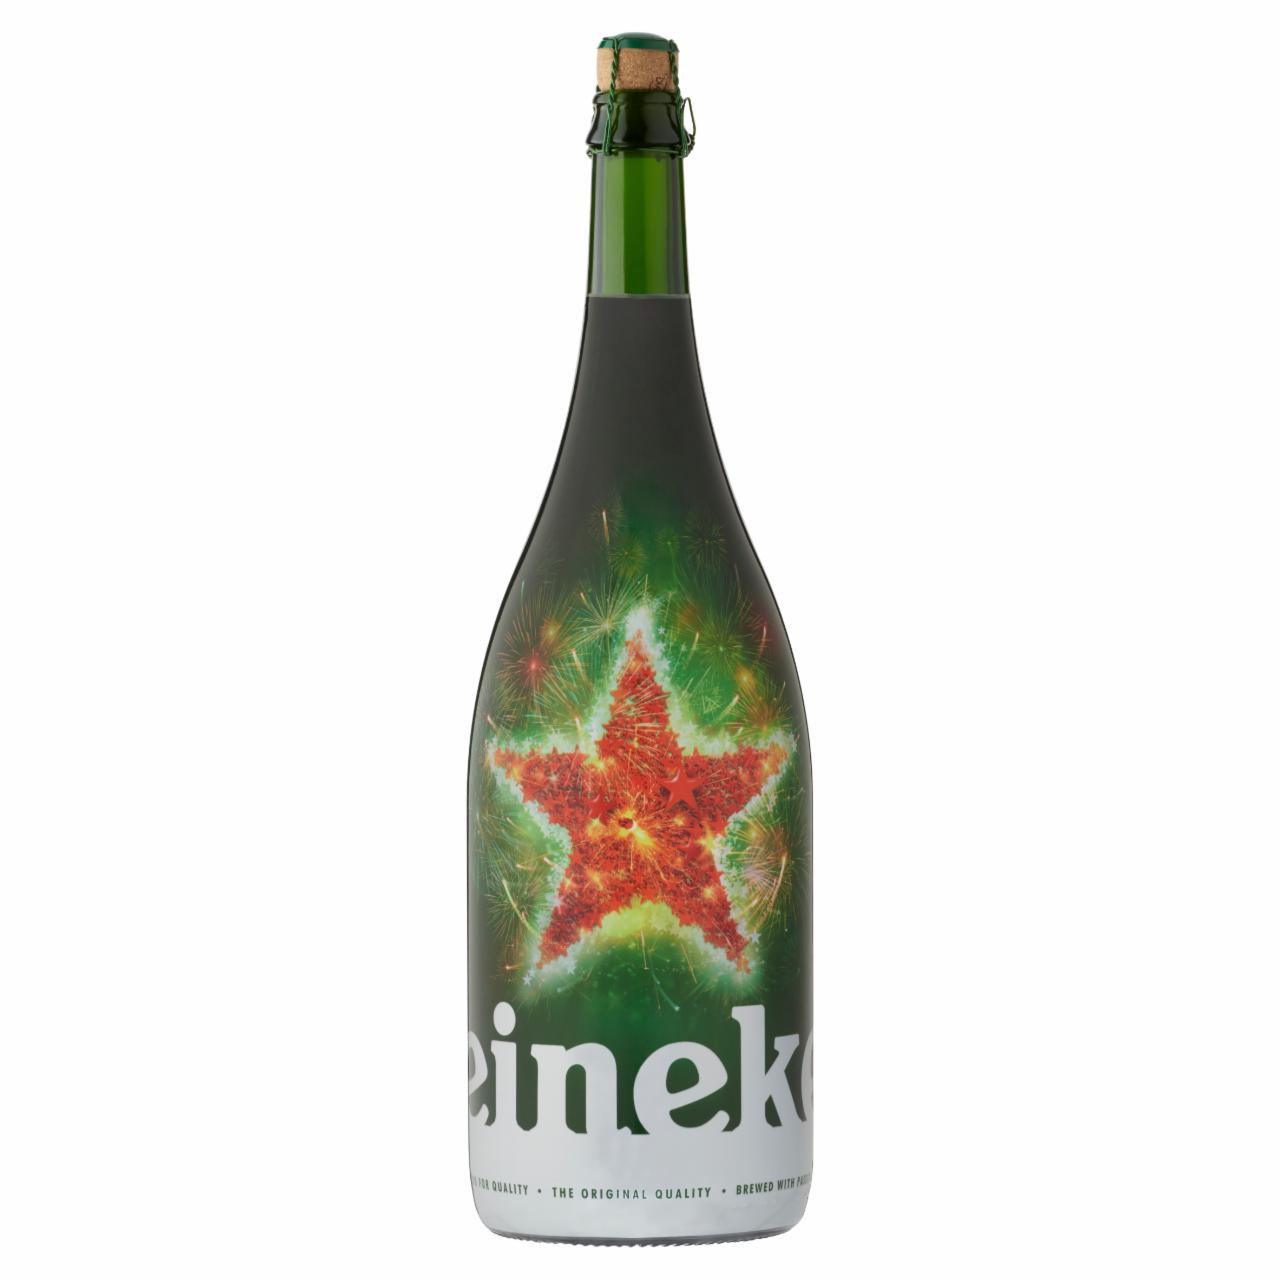 Képek - Heineken minőségi világos sör 5% 1,5 l ünnepi limitált kiadású üveg